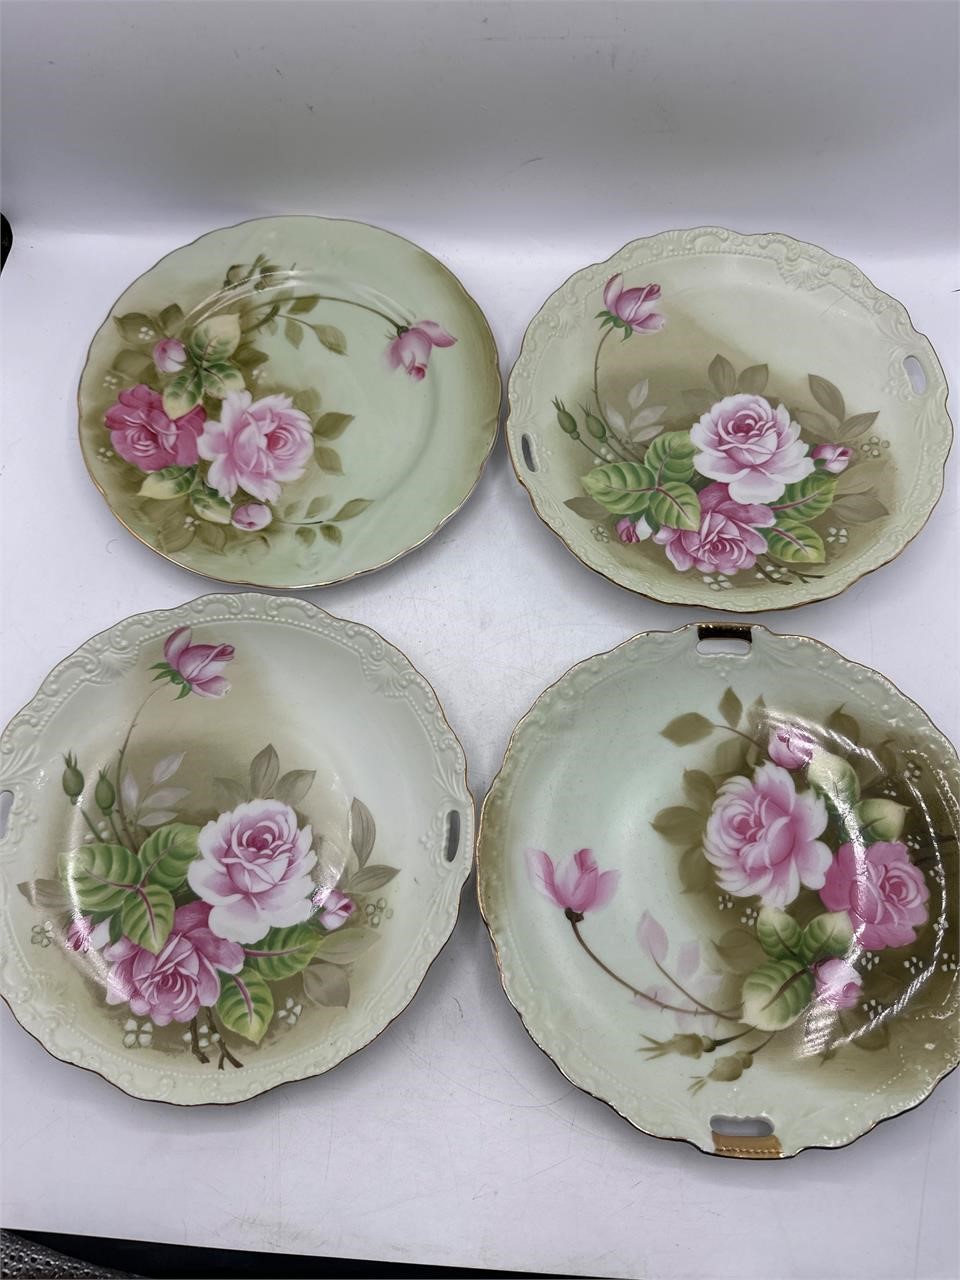 Lefton porcelain plates